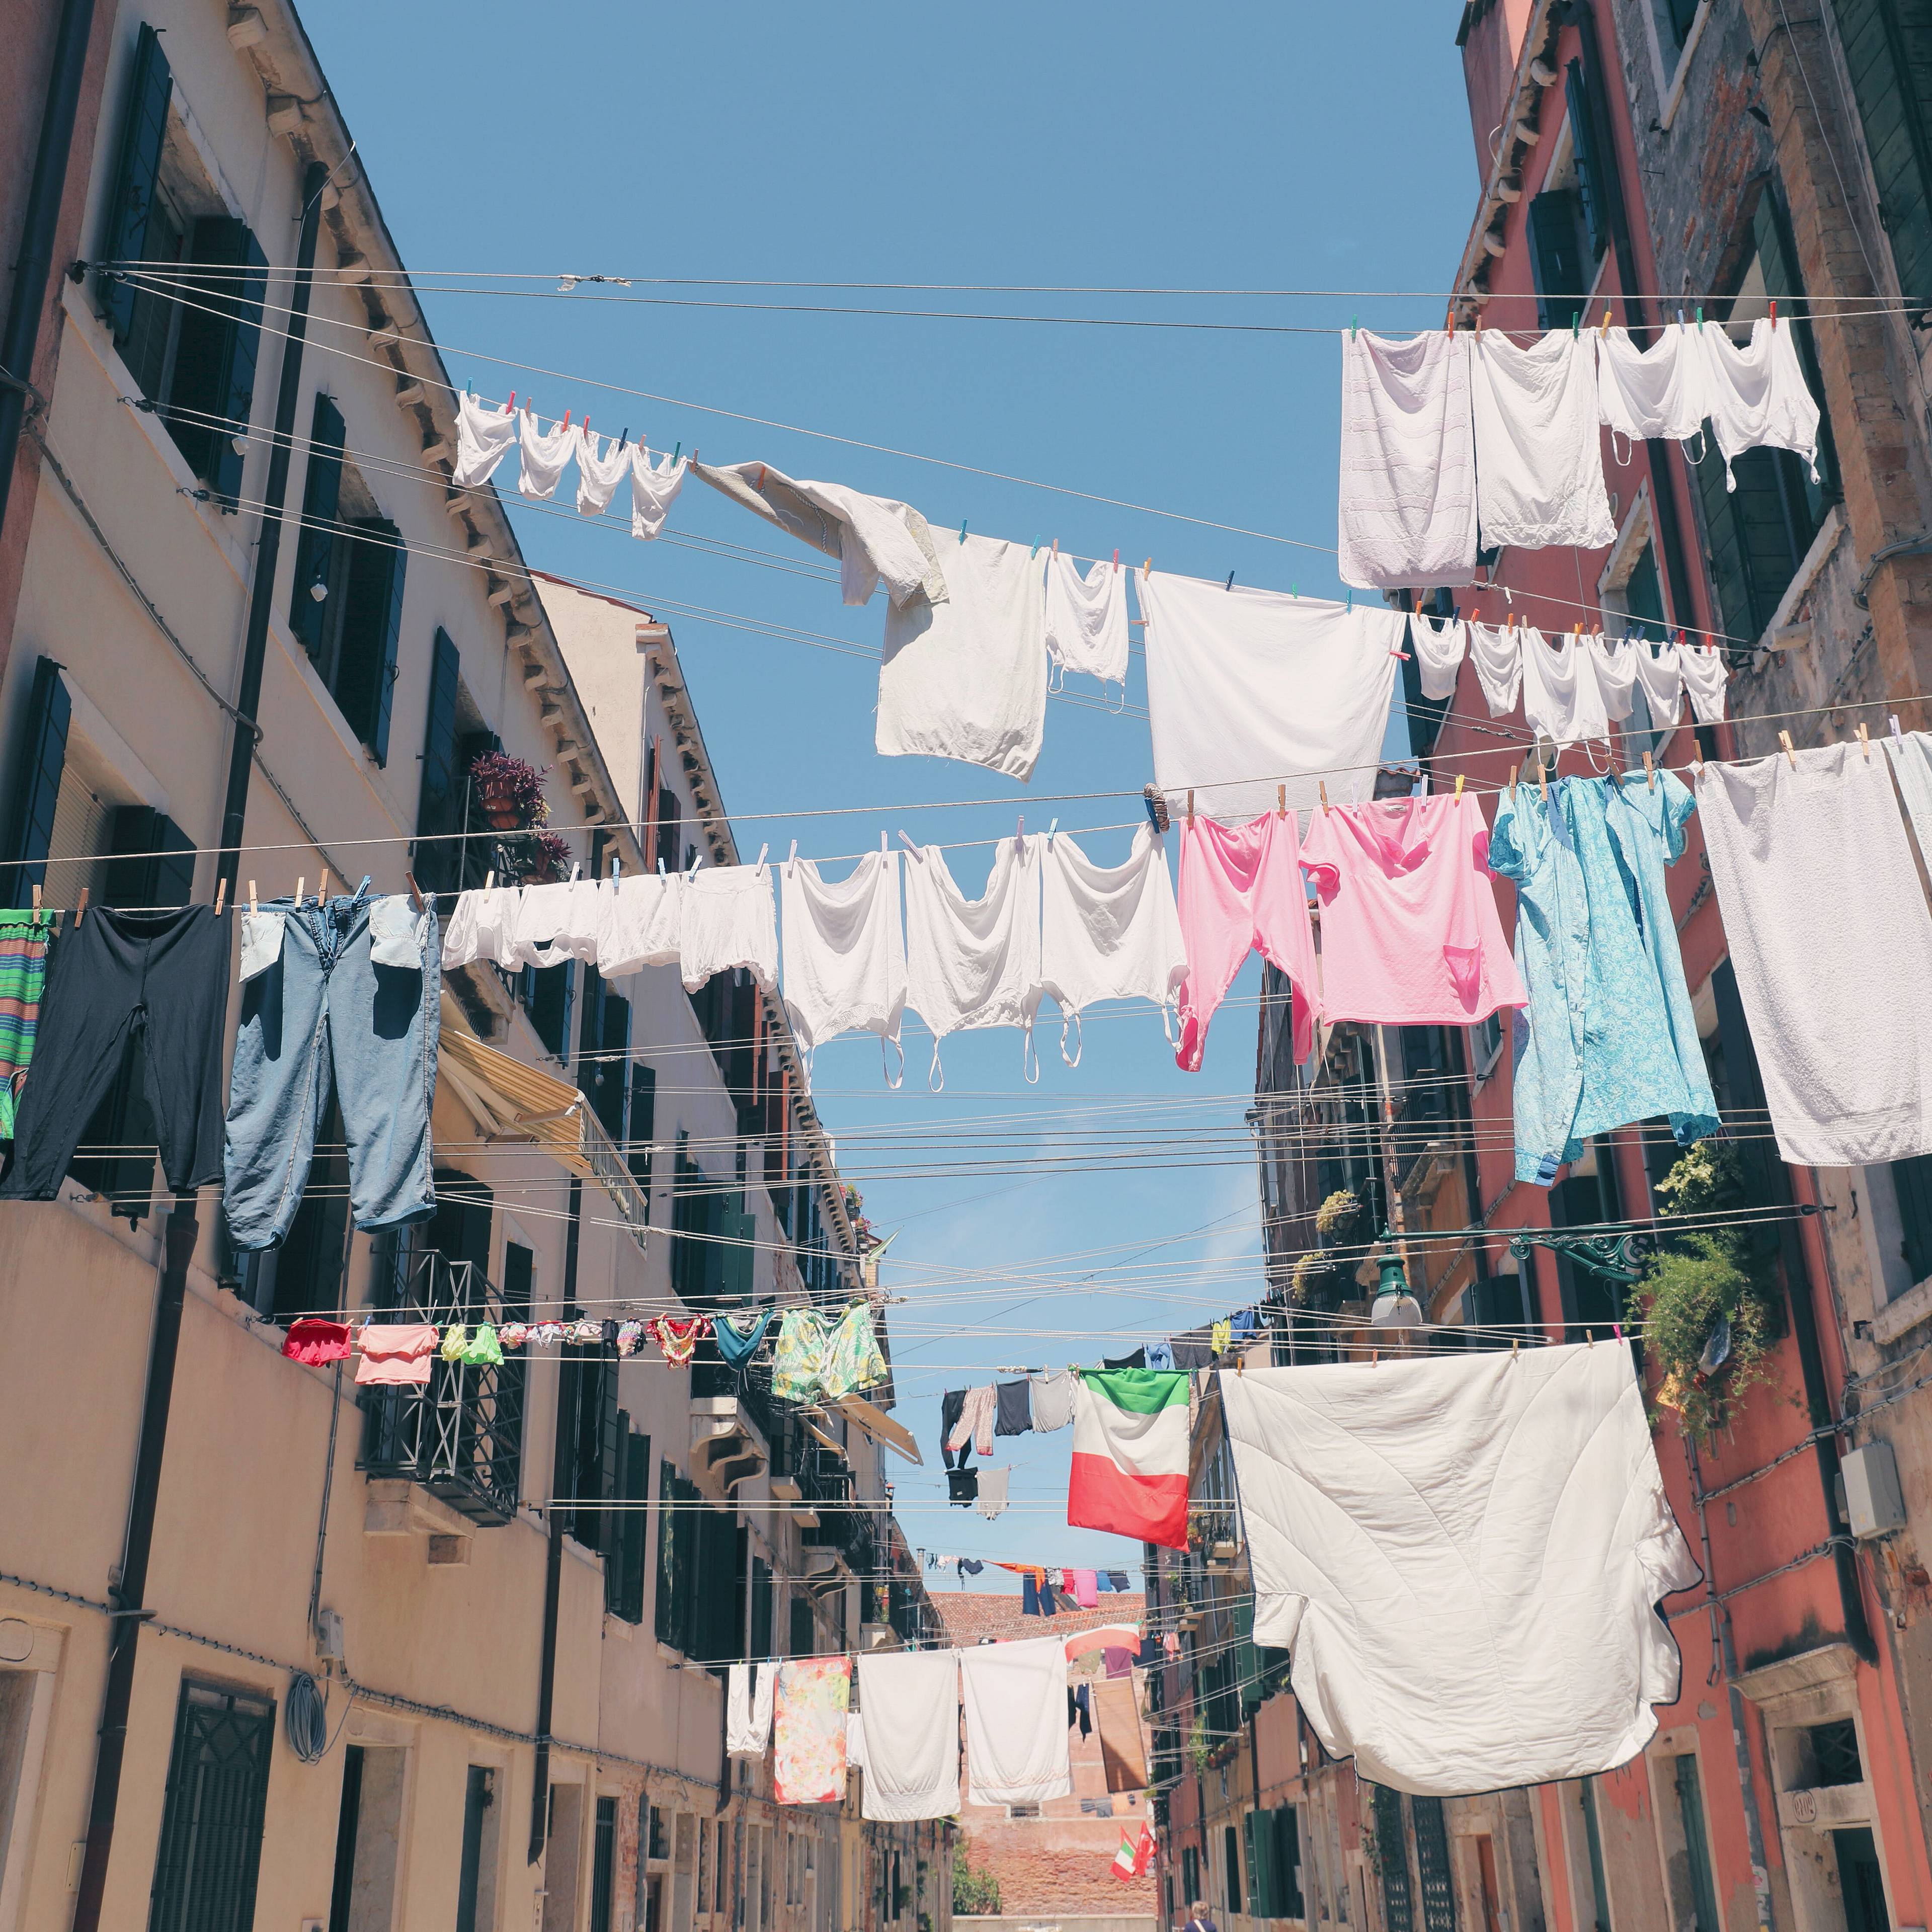 Wäsche trocknen an Drähten über eine neapolitanische Straße